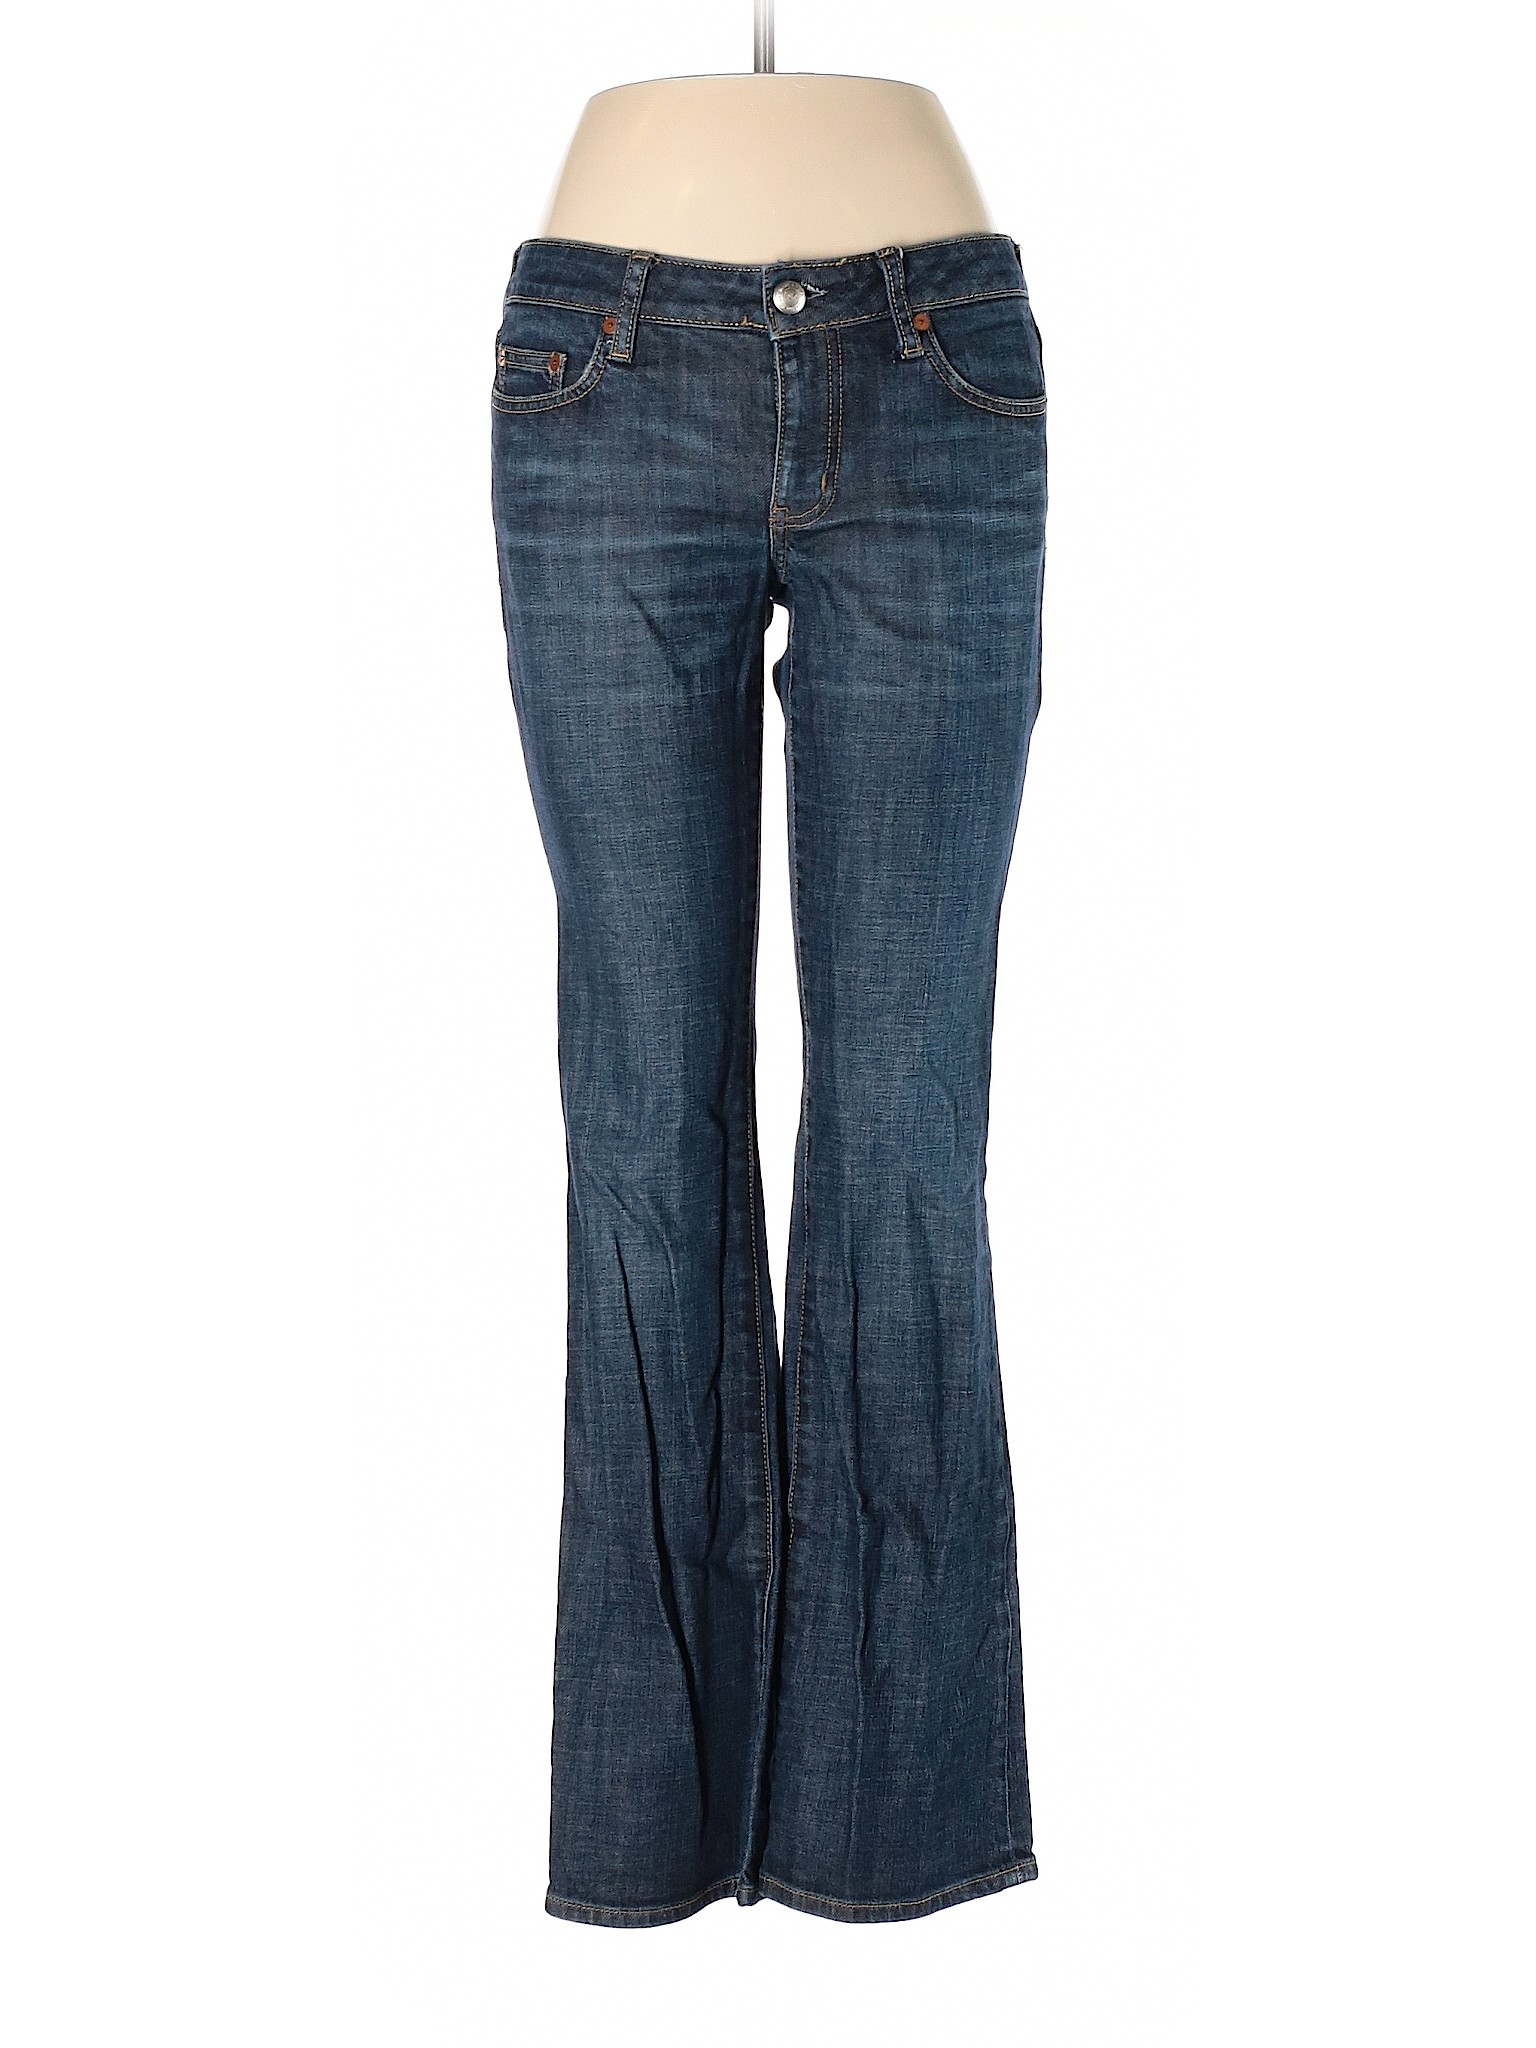 Martin + Osa Women Blue Jeans 28W | eBay